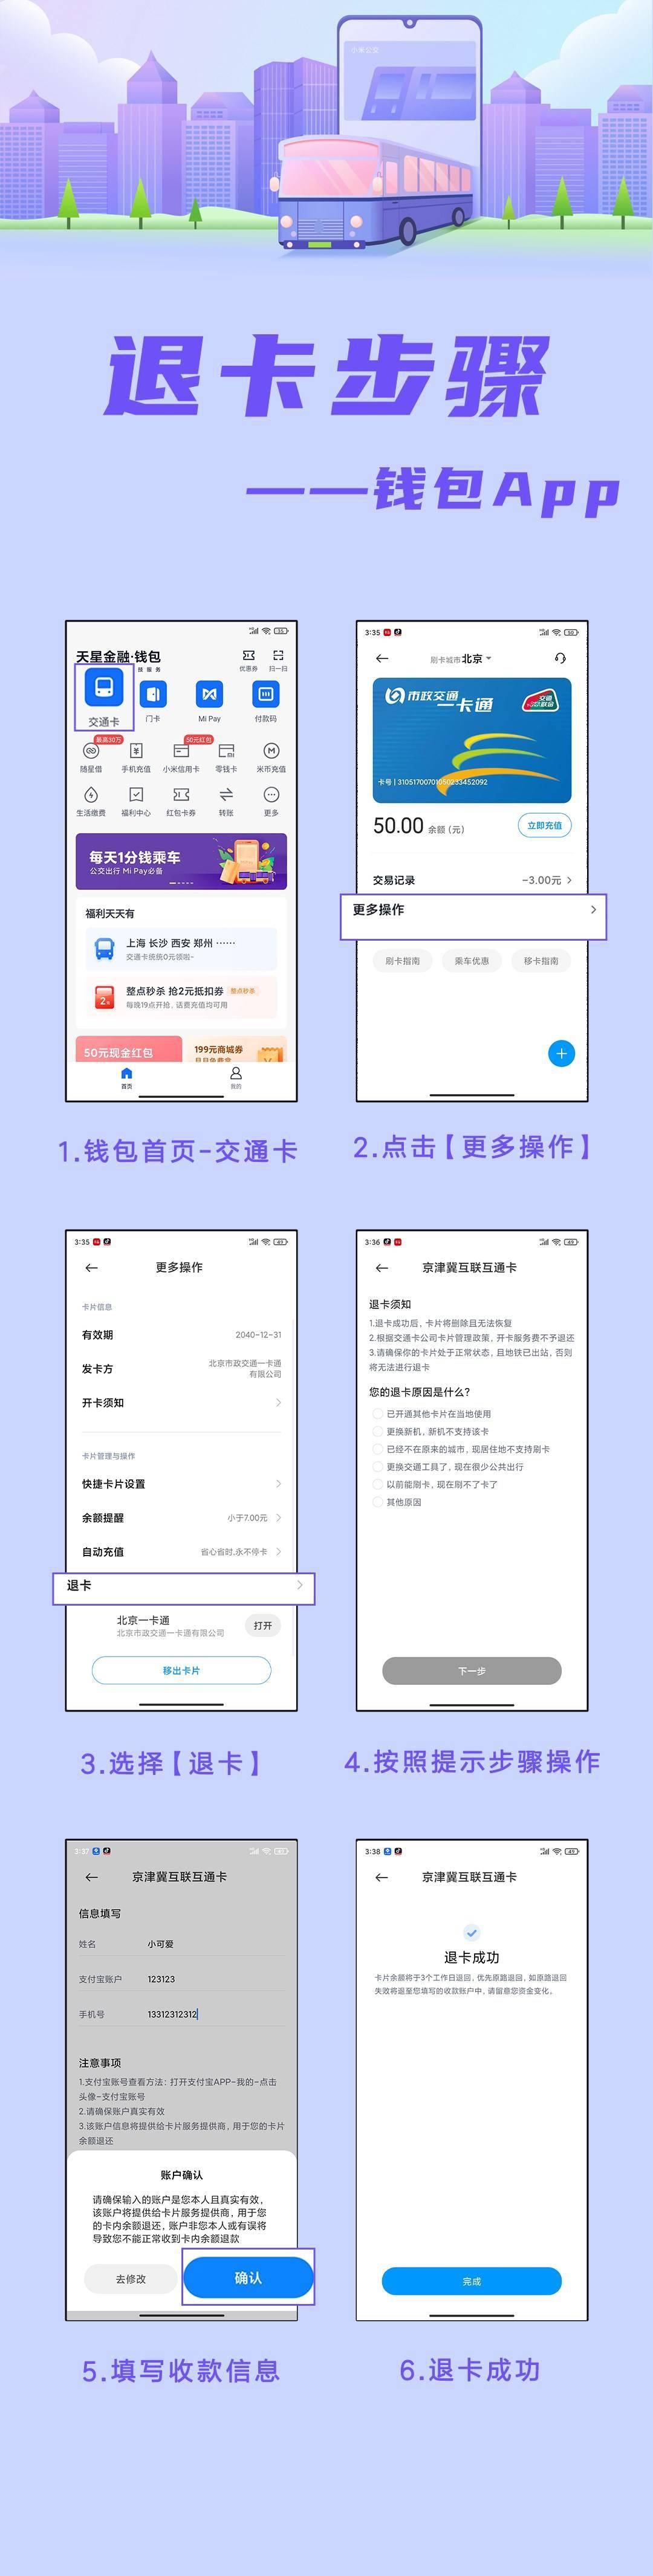 南京市民卡办理流程- 本地宝